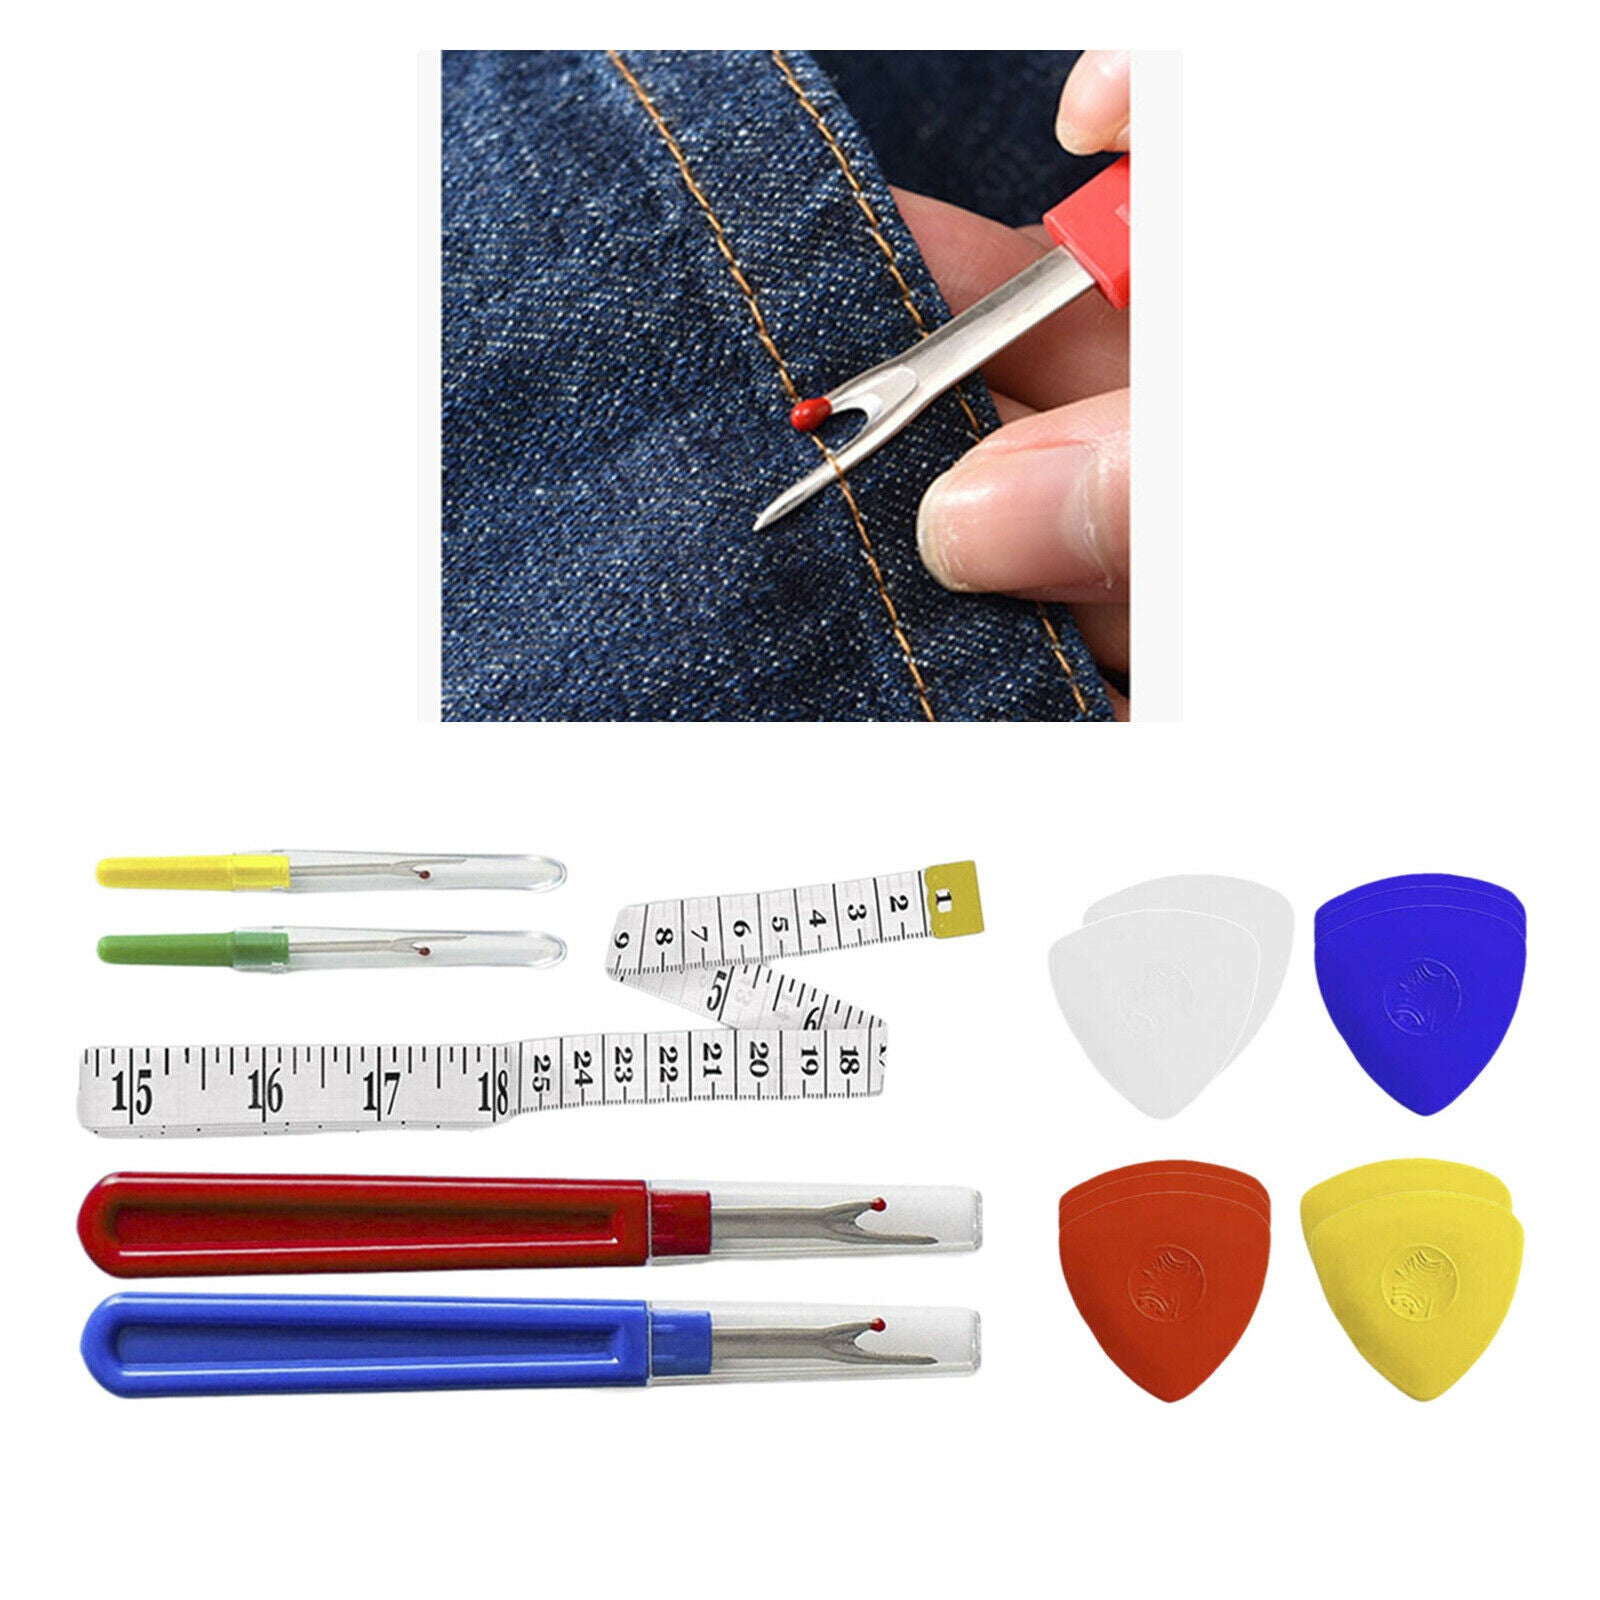 15Pcs Seam Ripper Sew Stitching Unpicker Needlework Stitch Supplies Kits